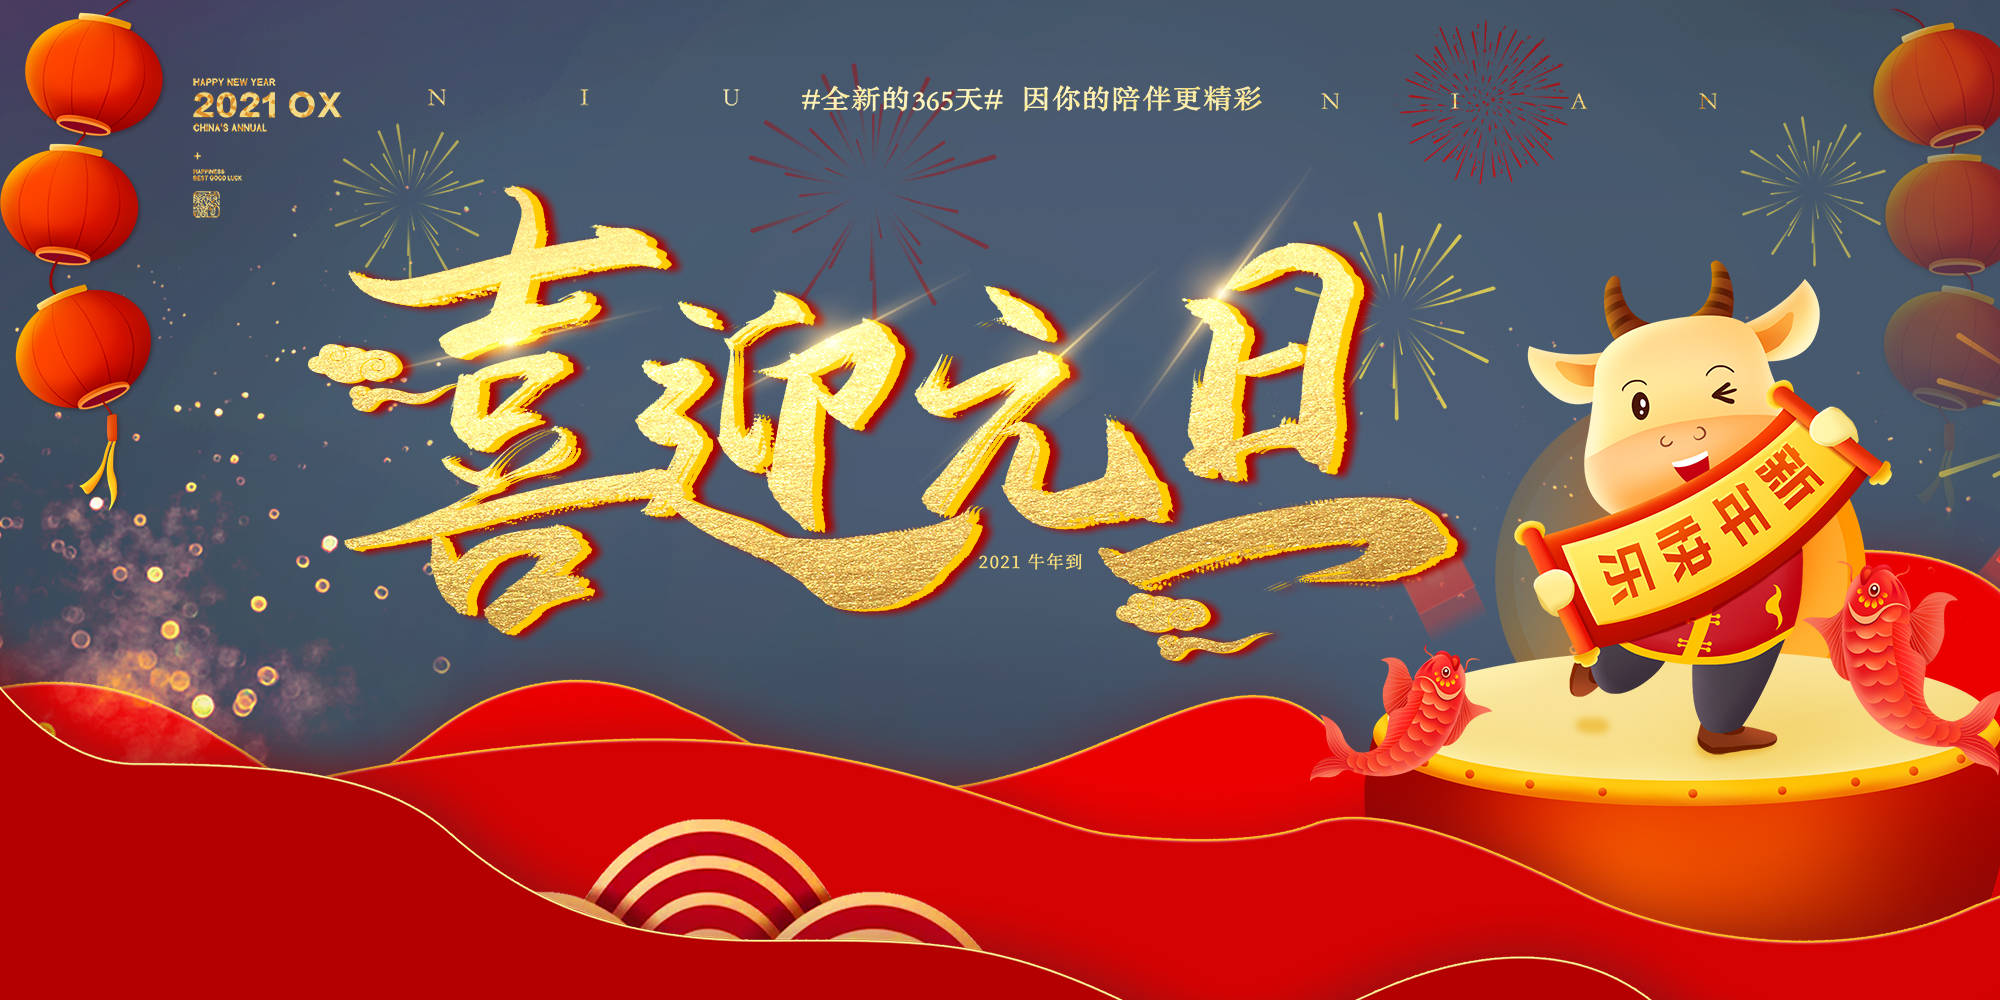 喜迎元旦丨杭州飞畅科技预祝大家2021元旦快乐!